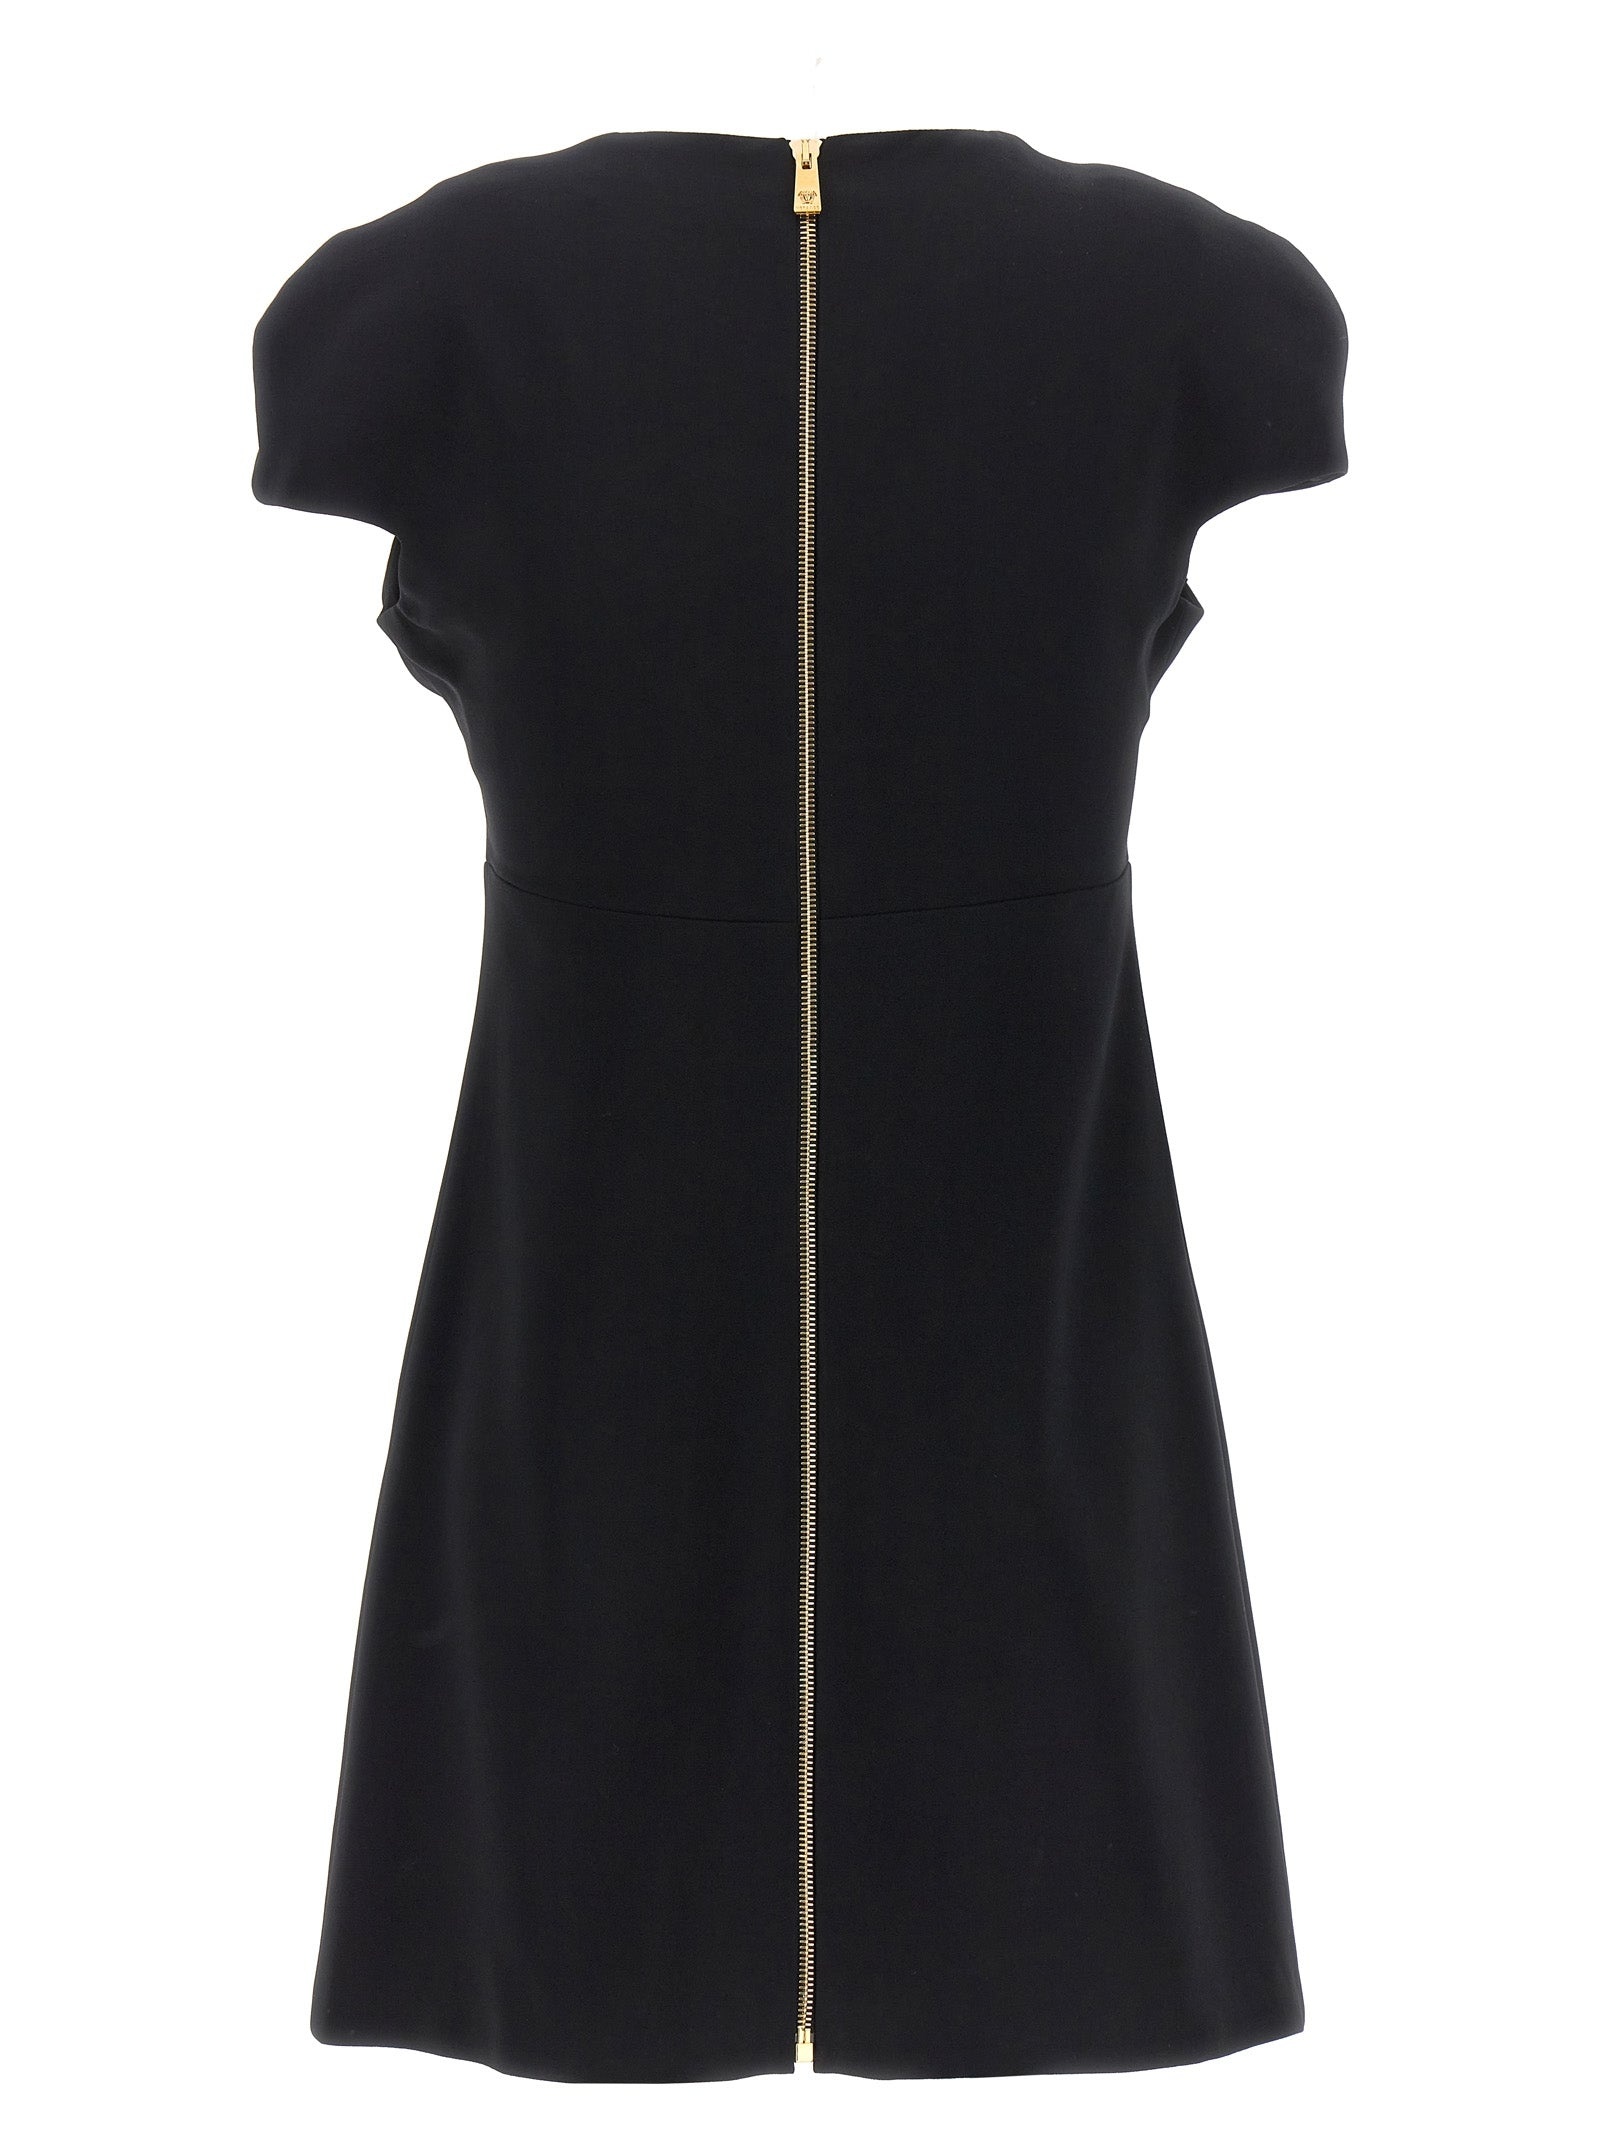 Versace Heart Shaped Neckline Dress - 2